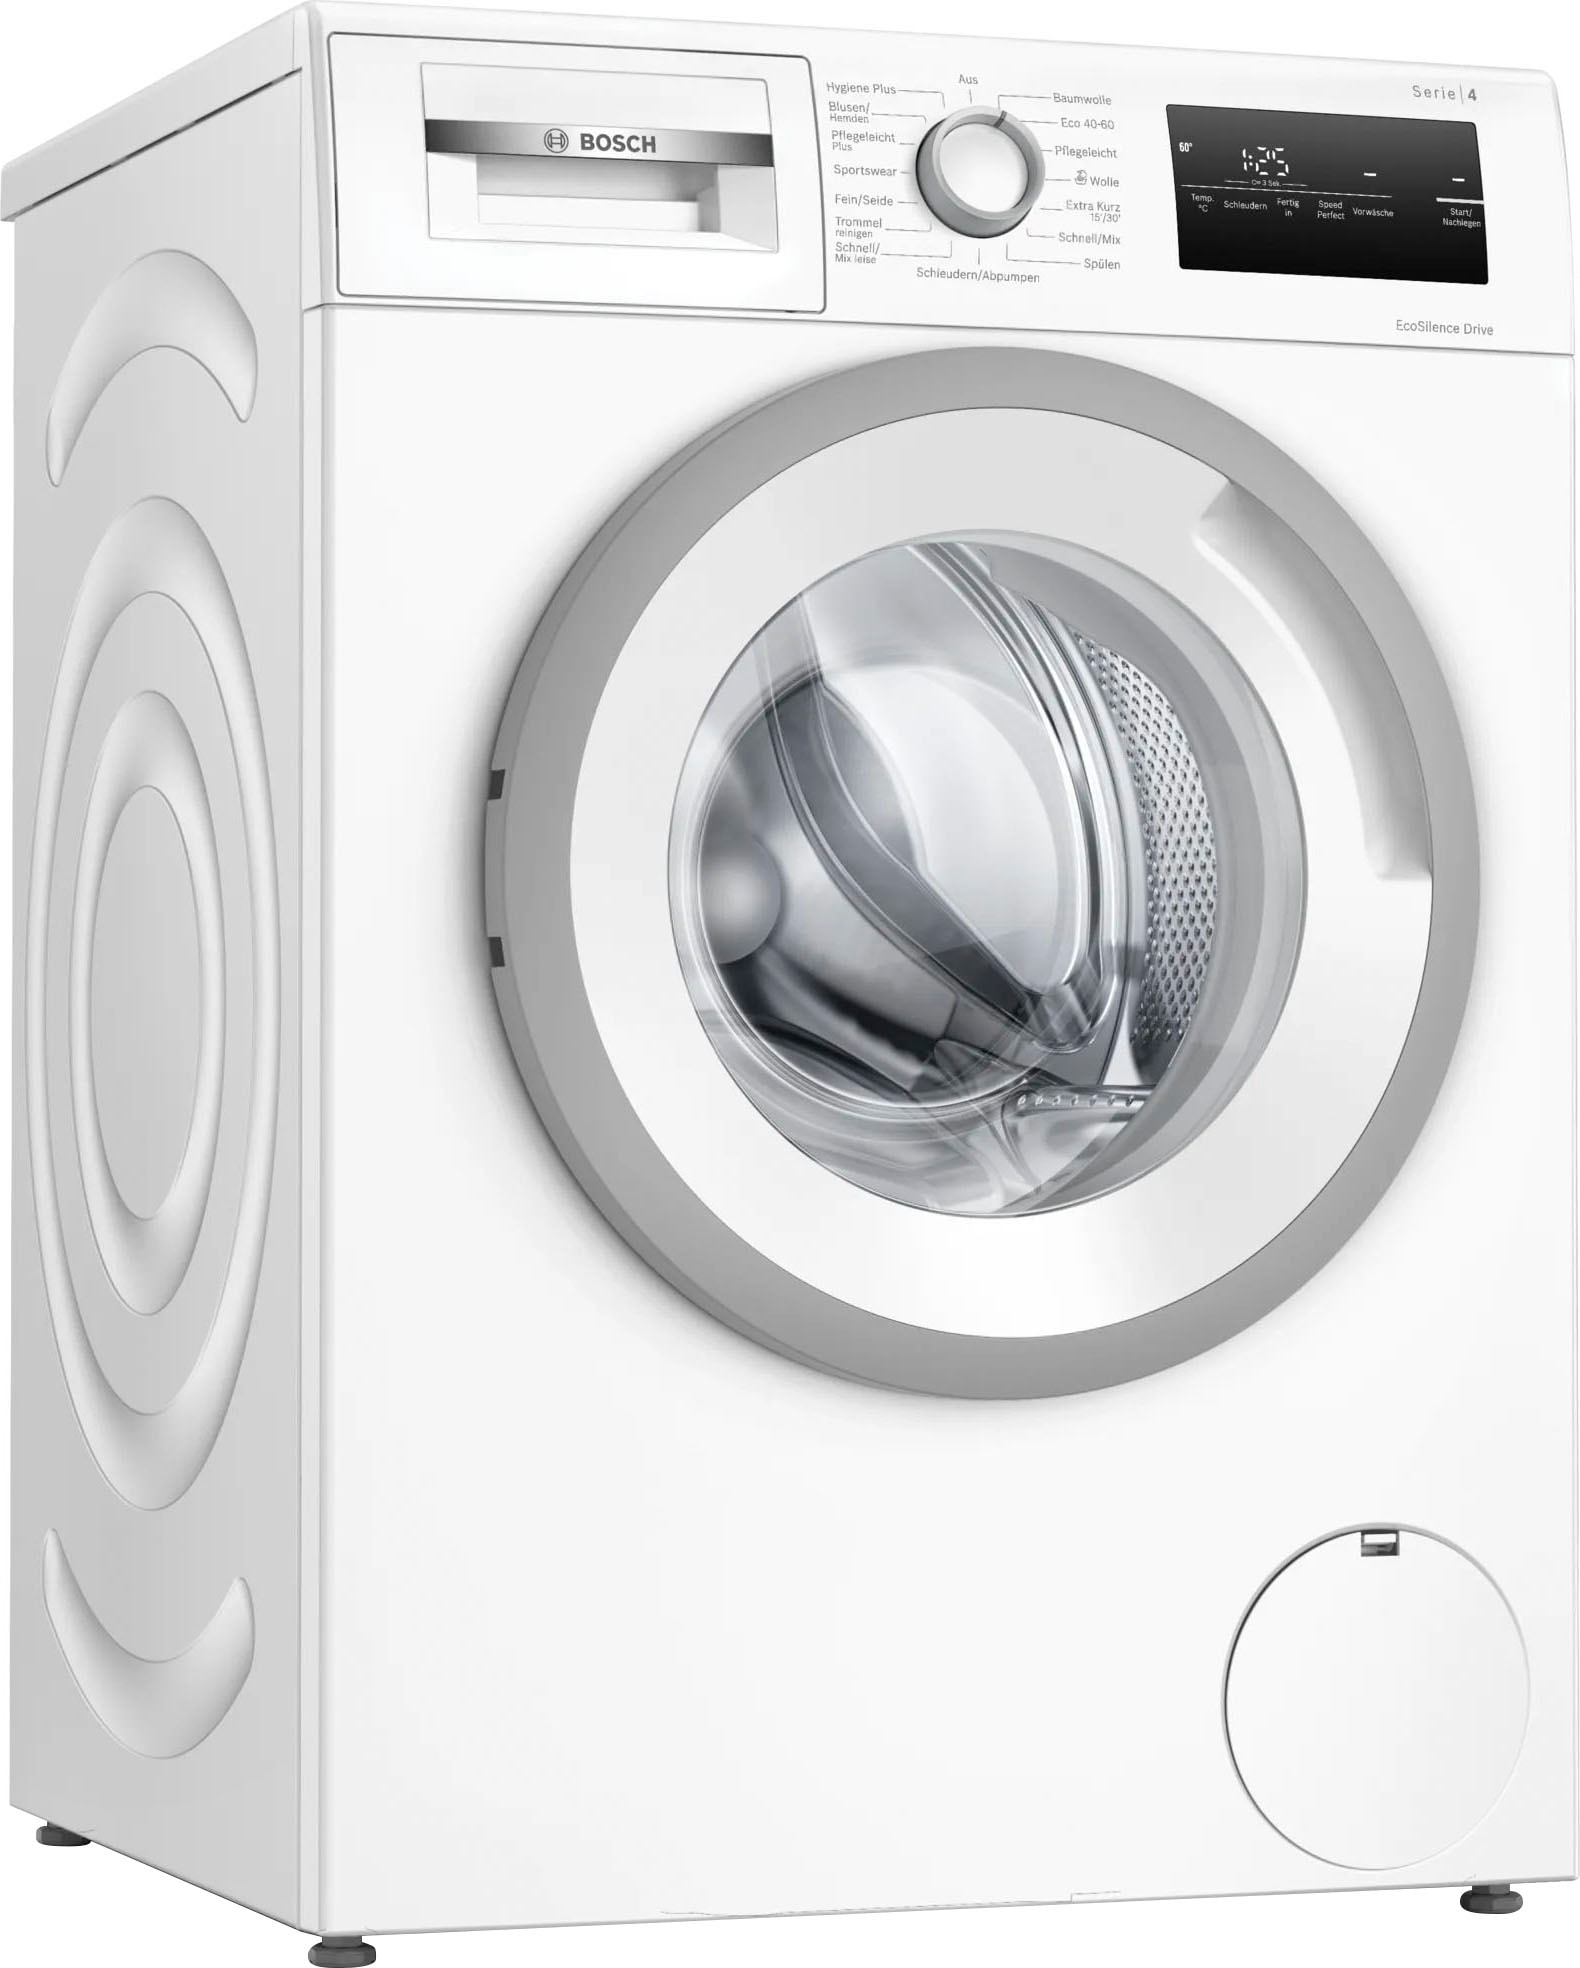 BOSCH Waschmaschine »WAN28129«, 1400 bei OTTO kg, Serie U/min 4, 8 WAN28129